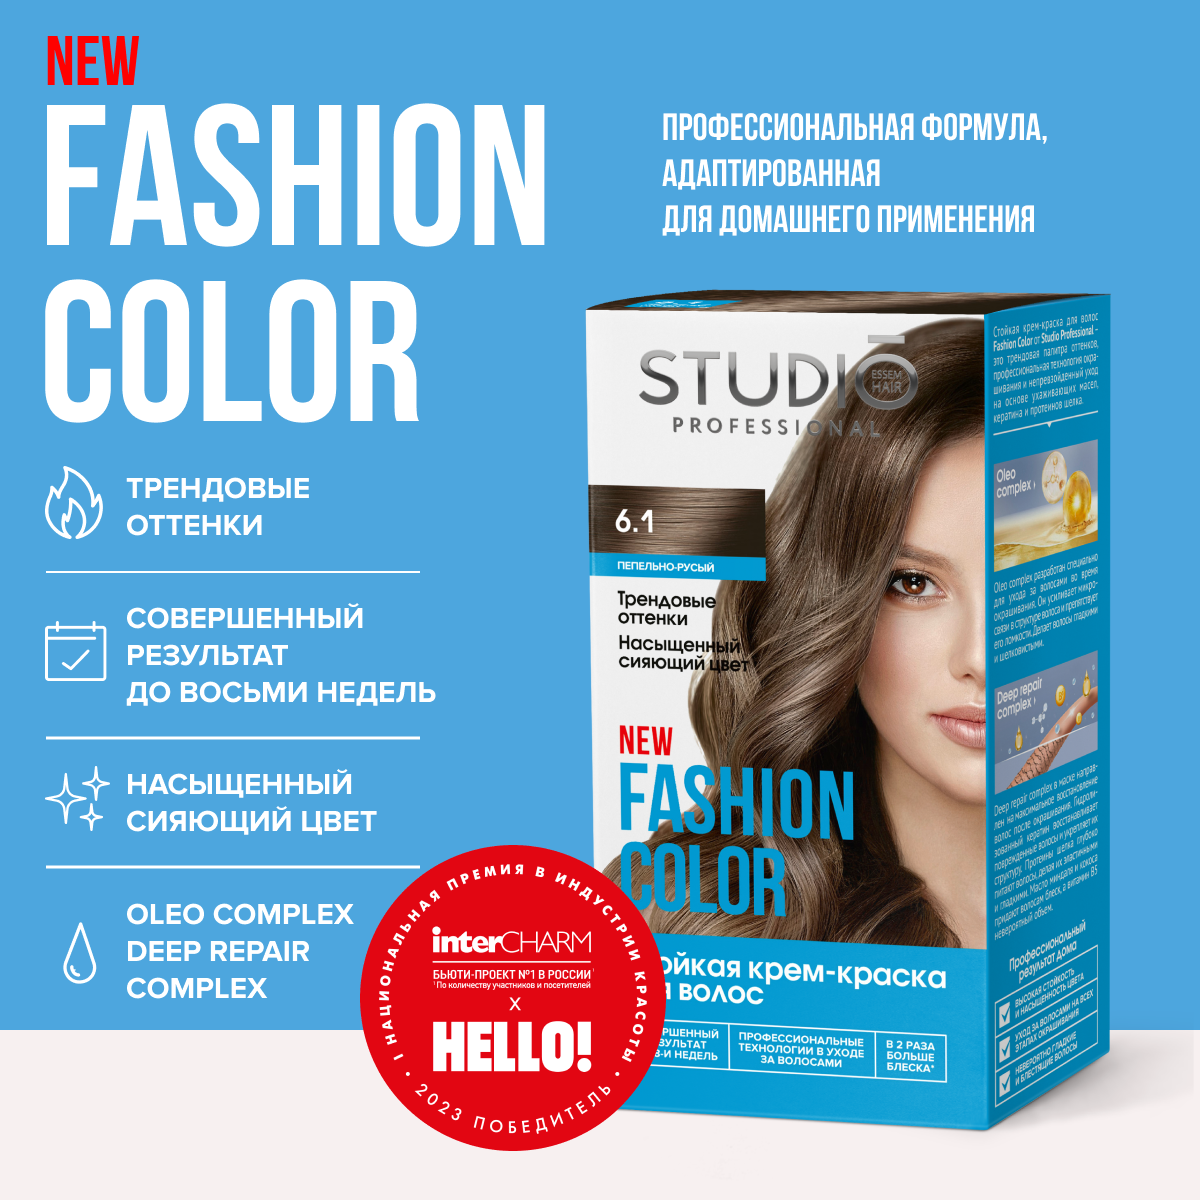 Studio Professional краска для волос Fashion Color 6.1 Пепельно-русый 50/50/15 мл